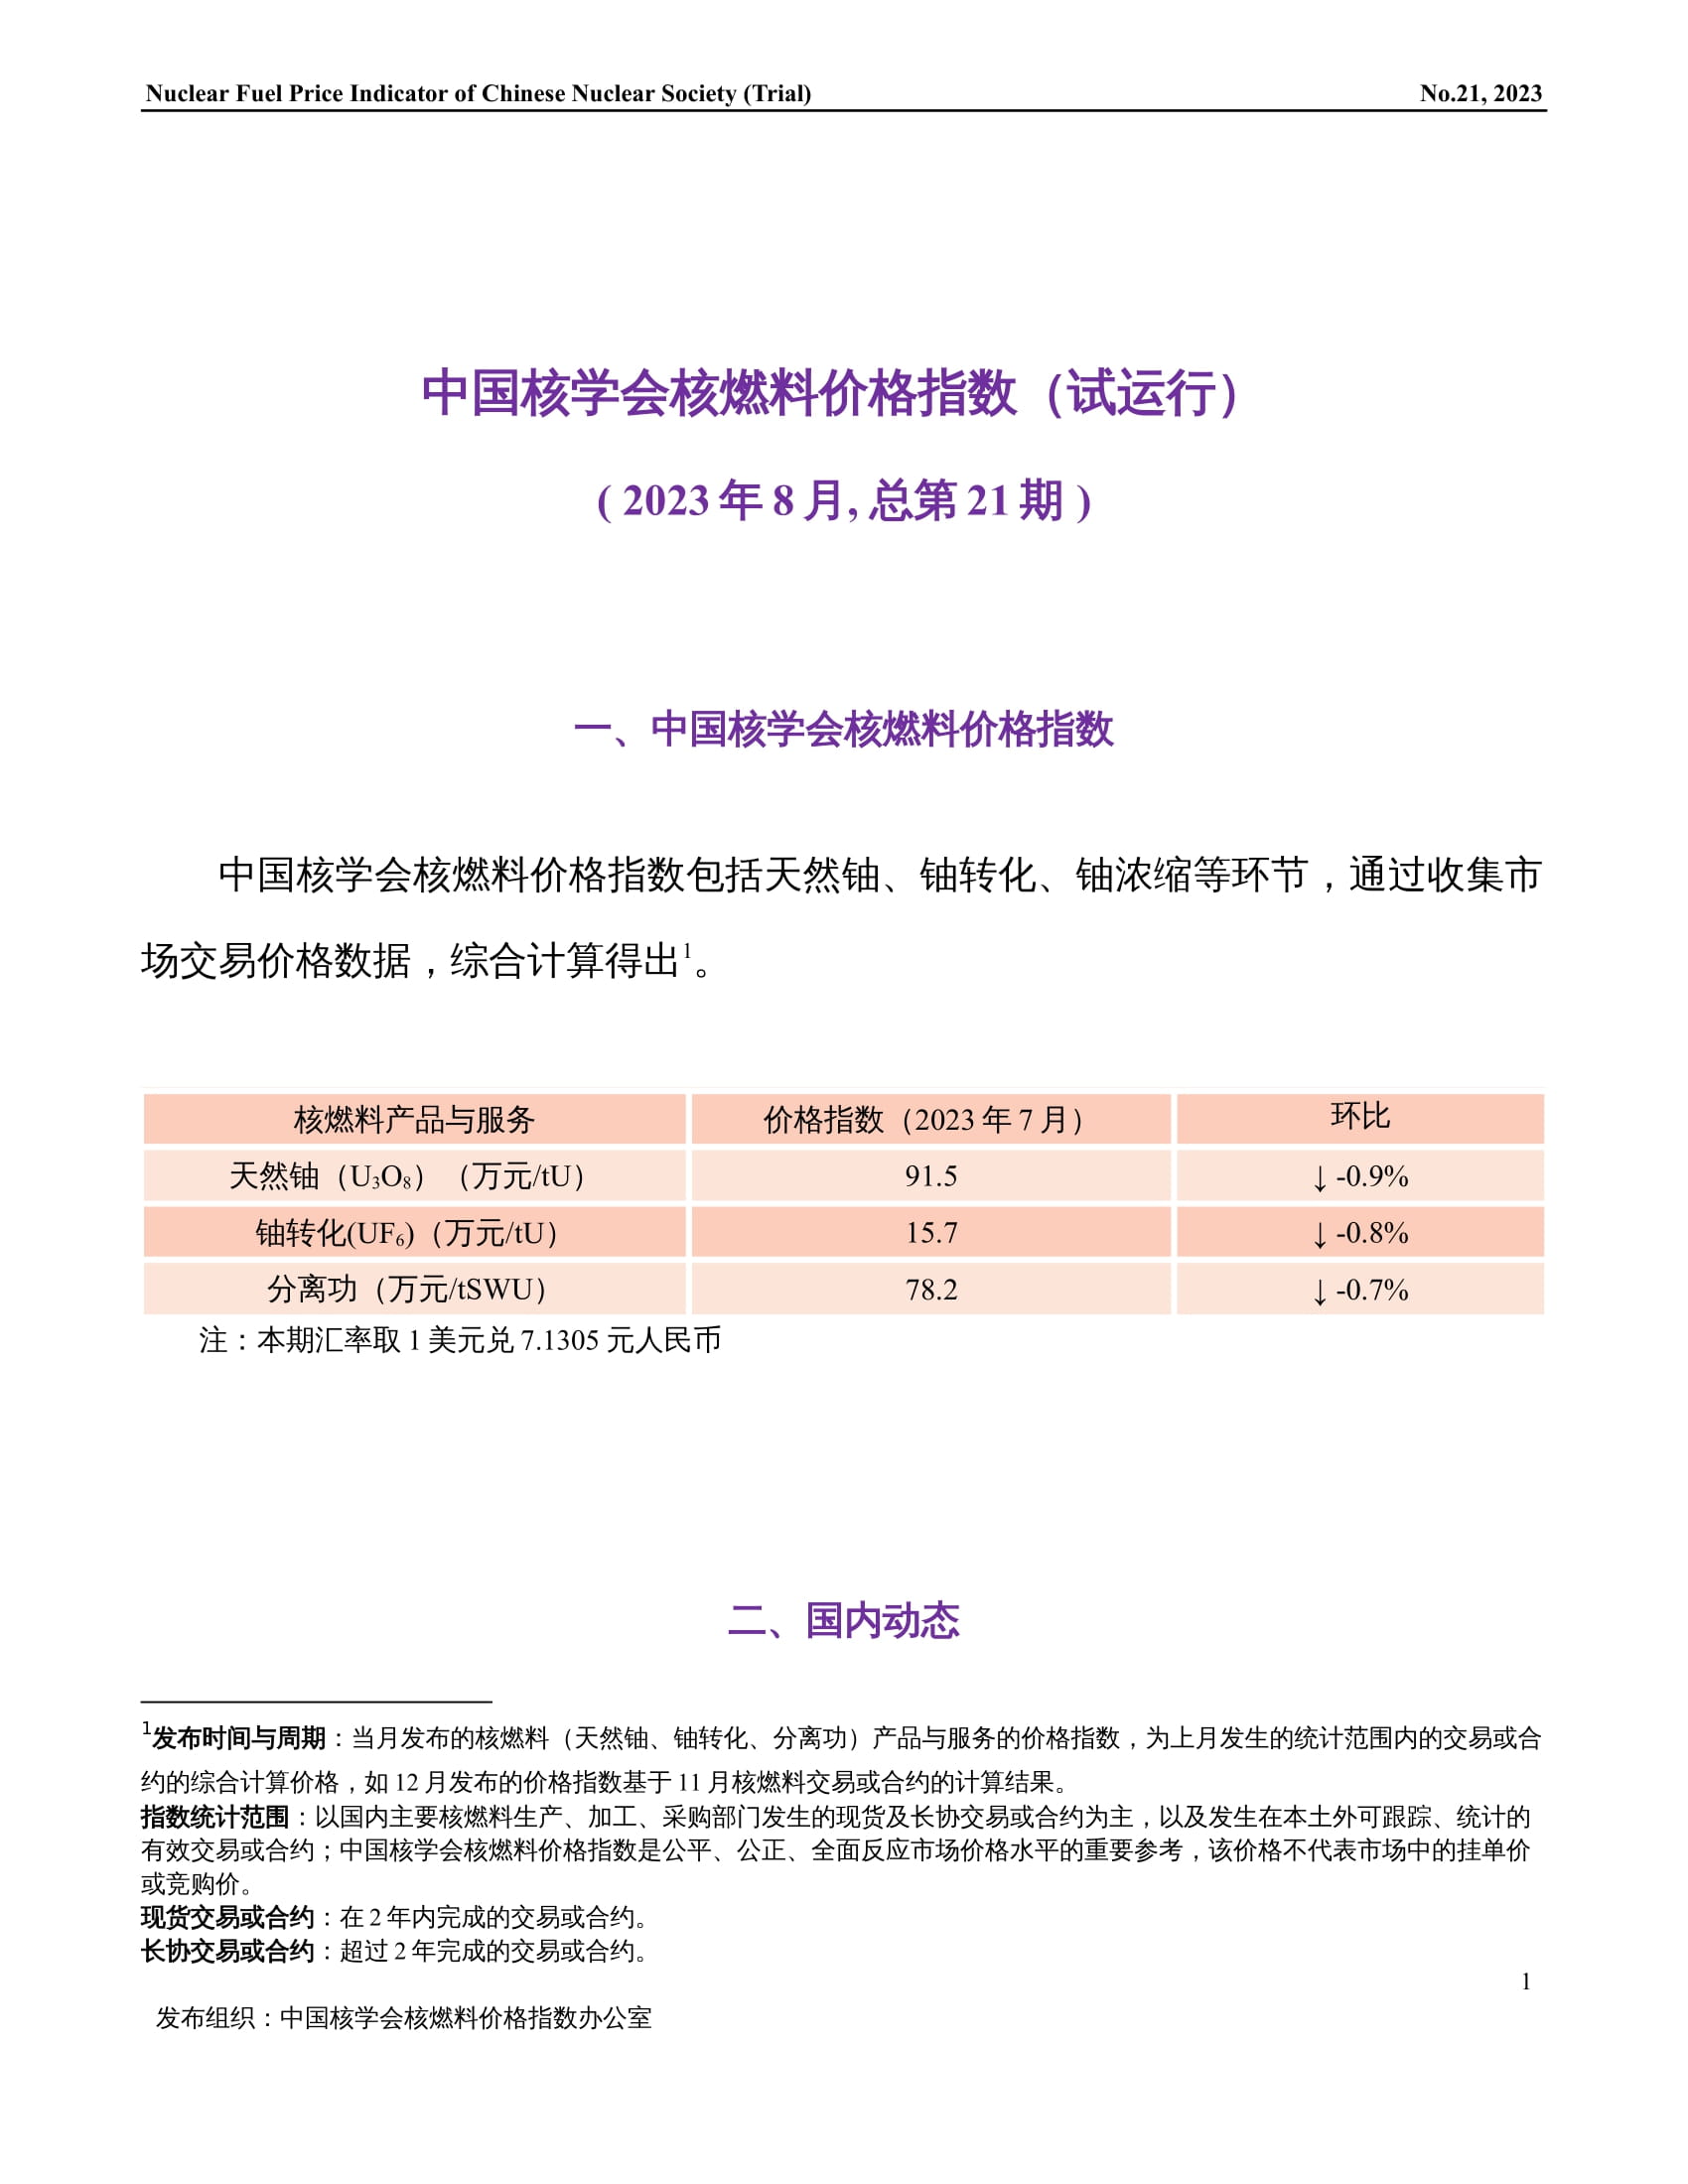 中国核学会核燃料价格指数(试运行)（2023年8月,总第21期）-终稿-1.jpg